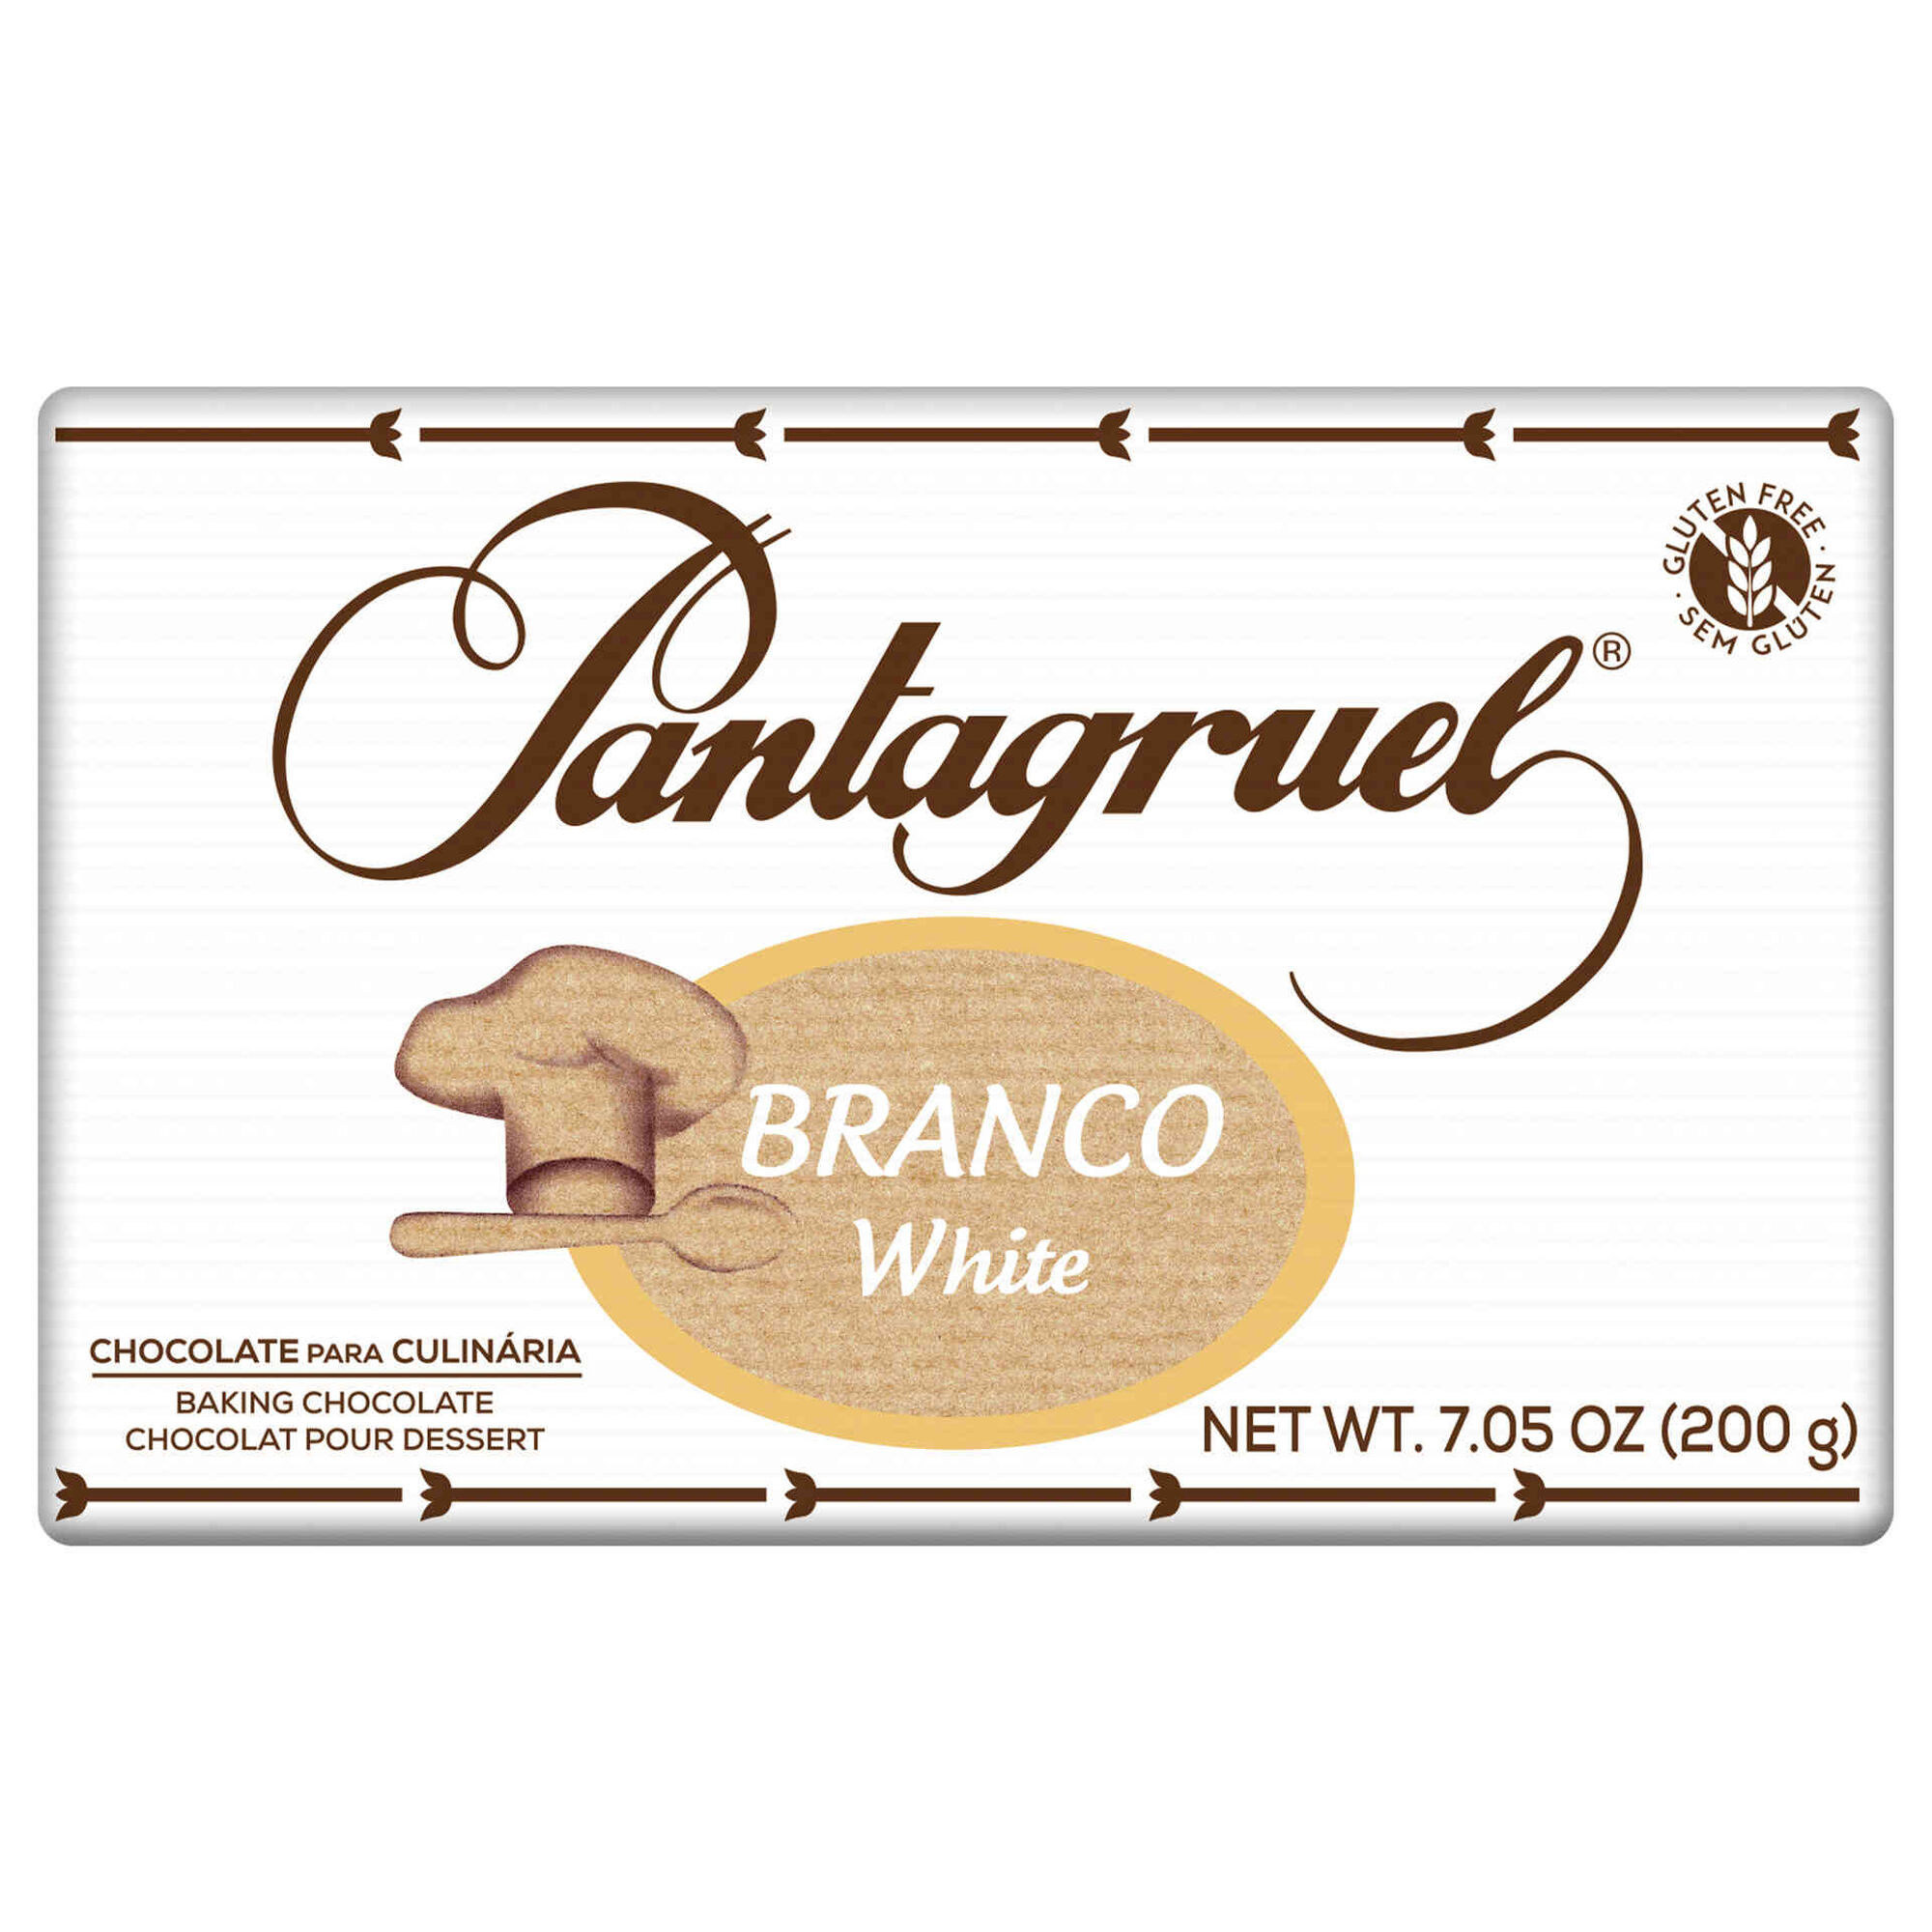 Chocolate Branco Culinária 200g Pantagruel